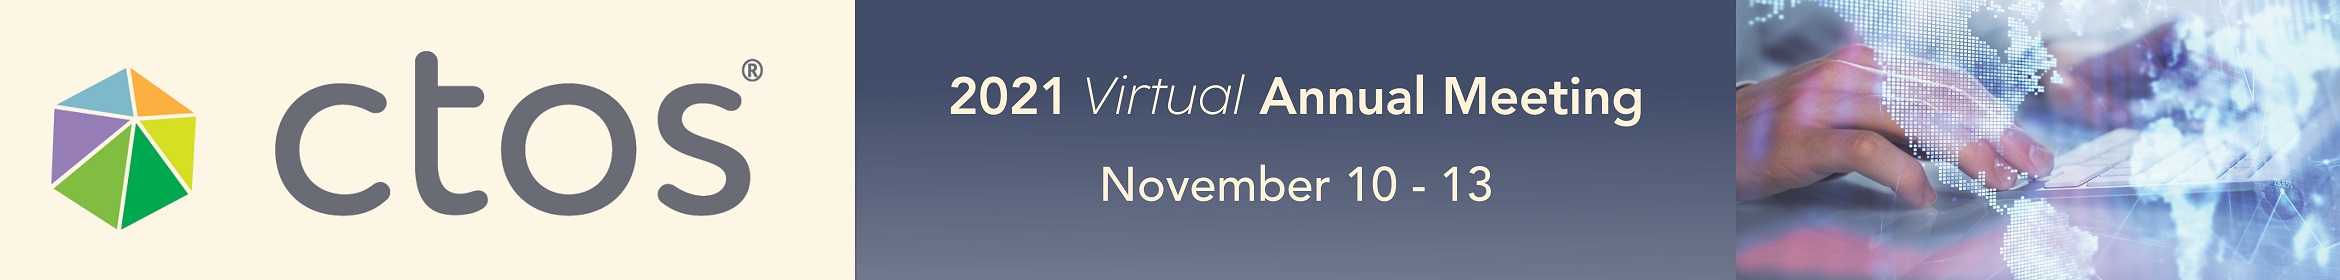 2021 CTOS Virtual Annual Meeting Main banner